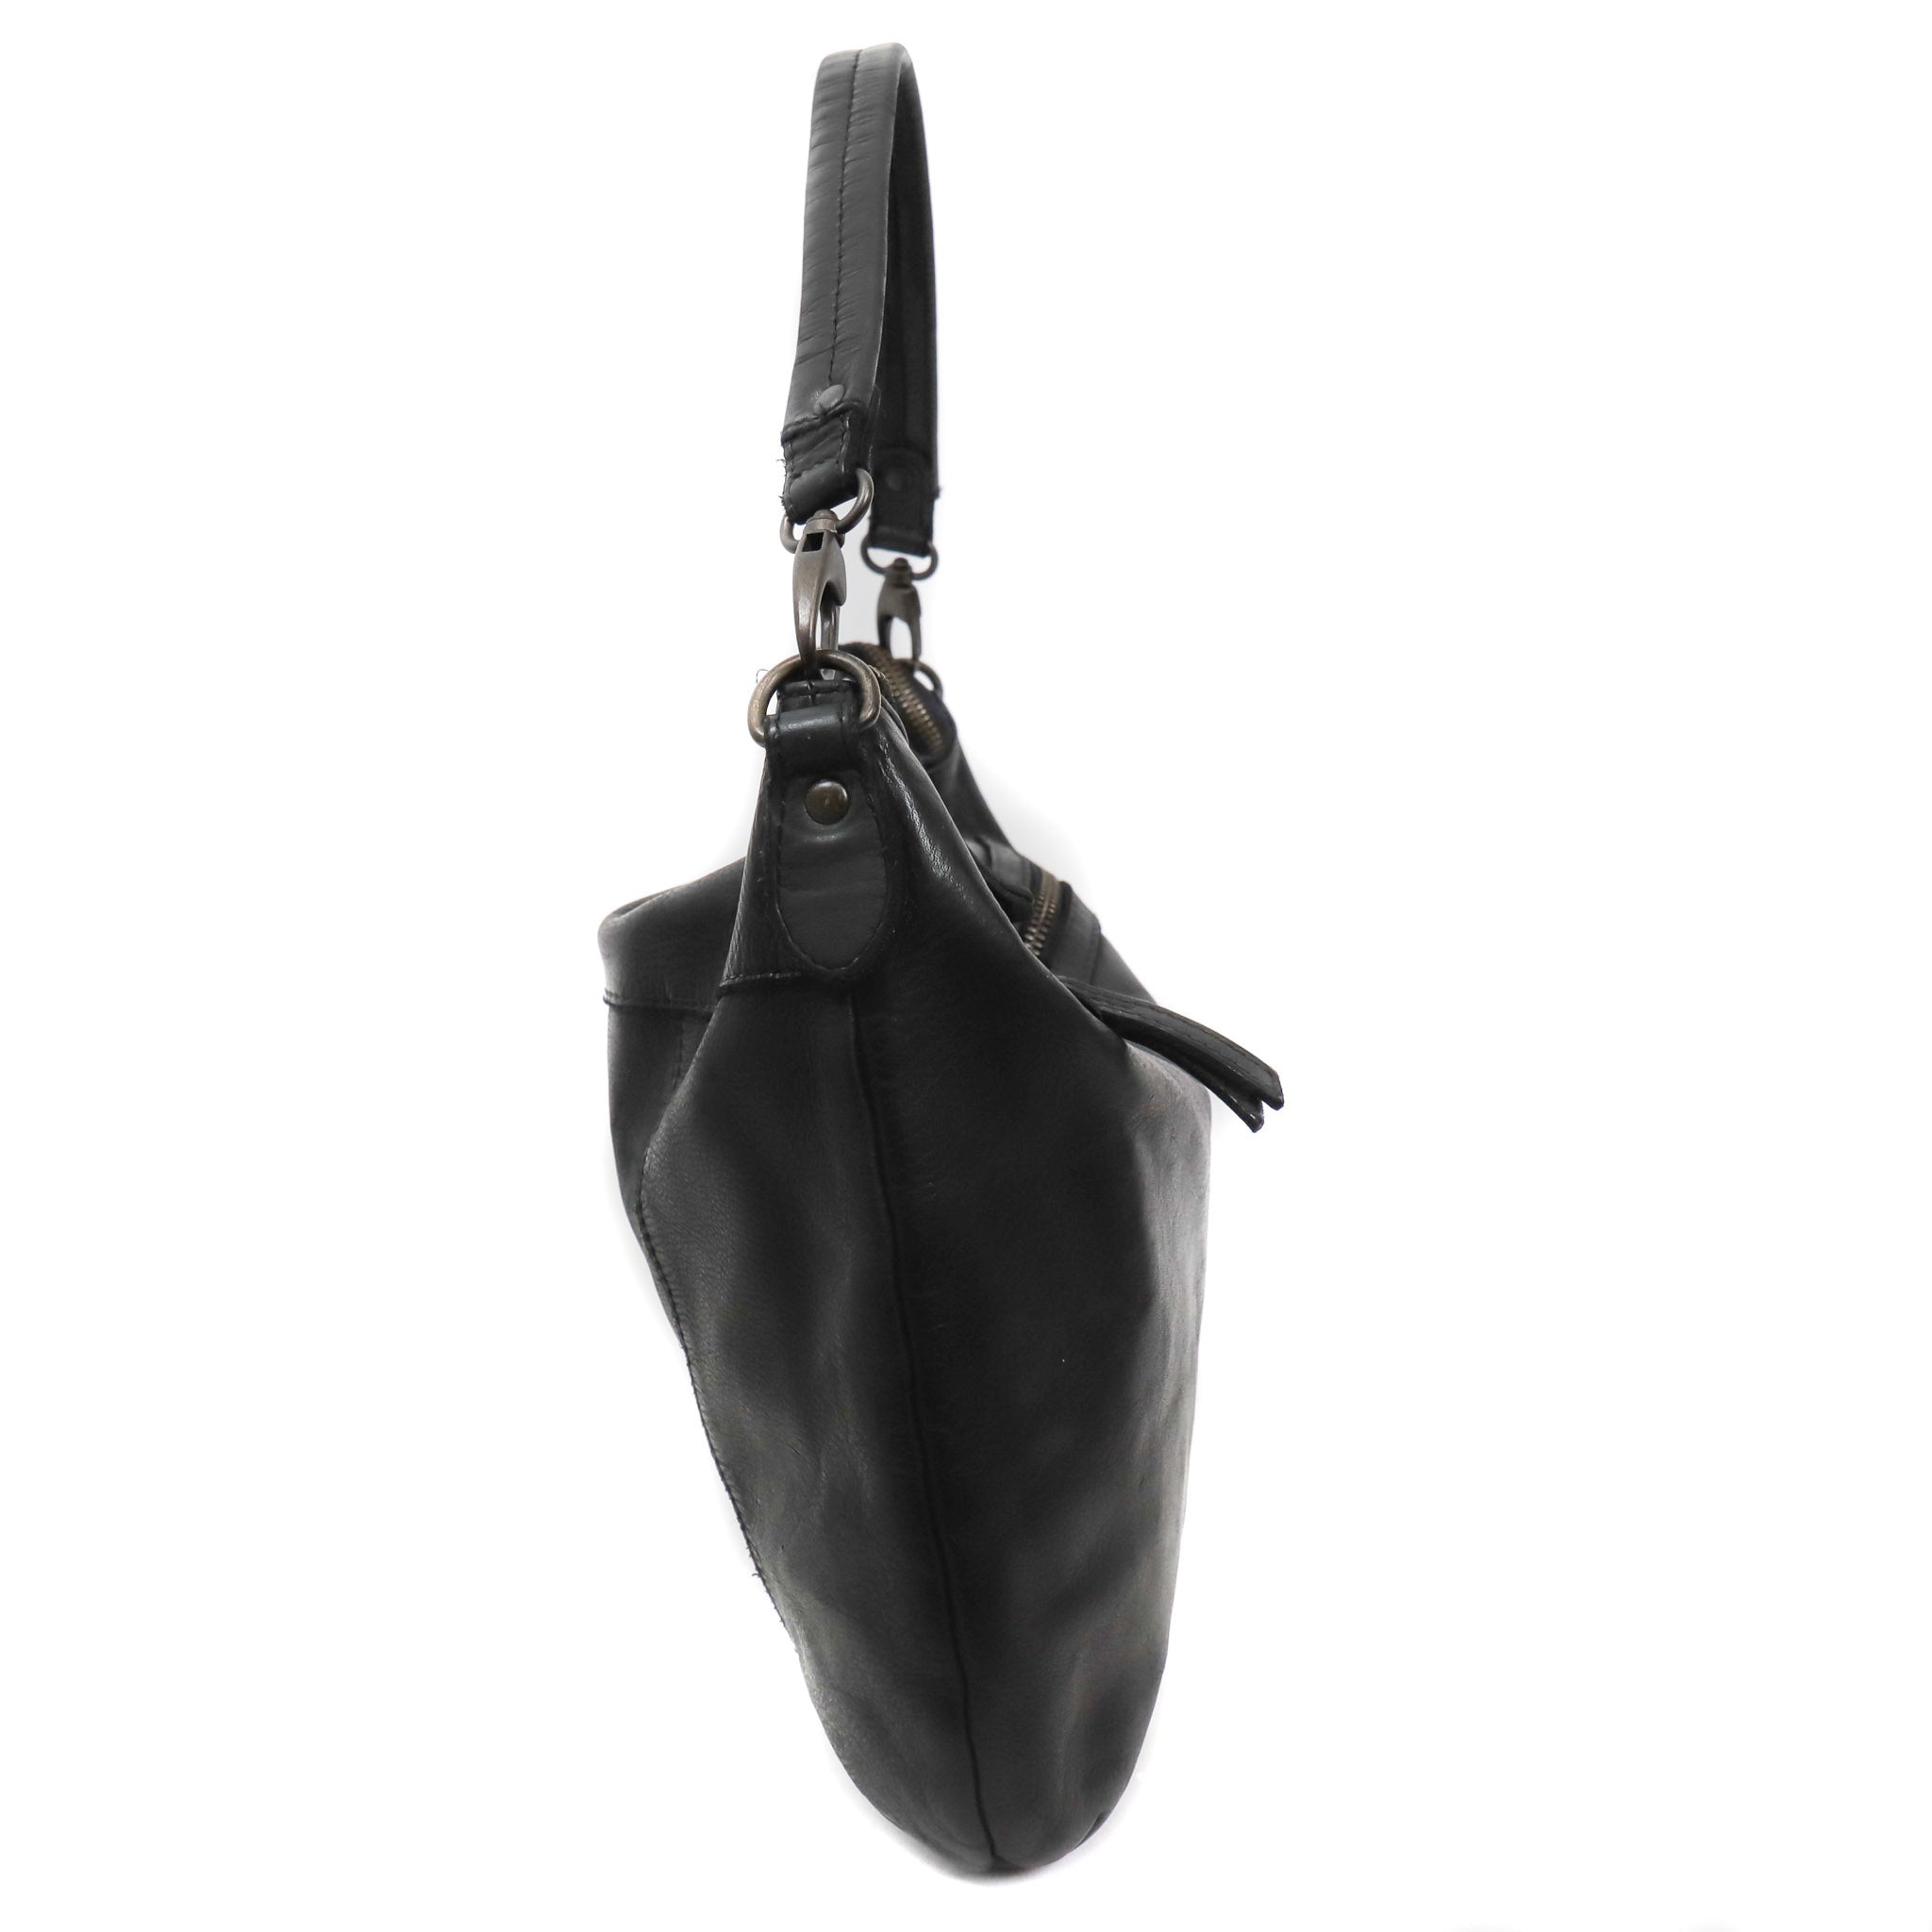 Pouch bag 'Megan' black - CL 35658